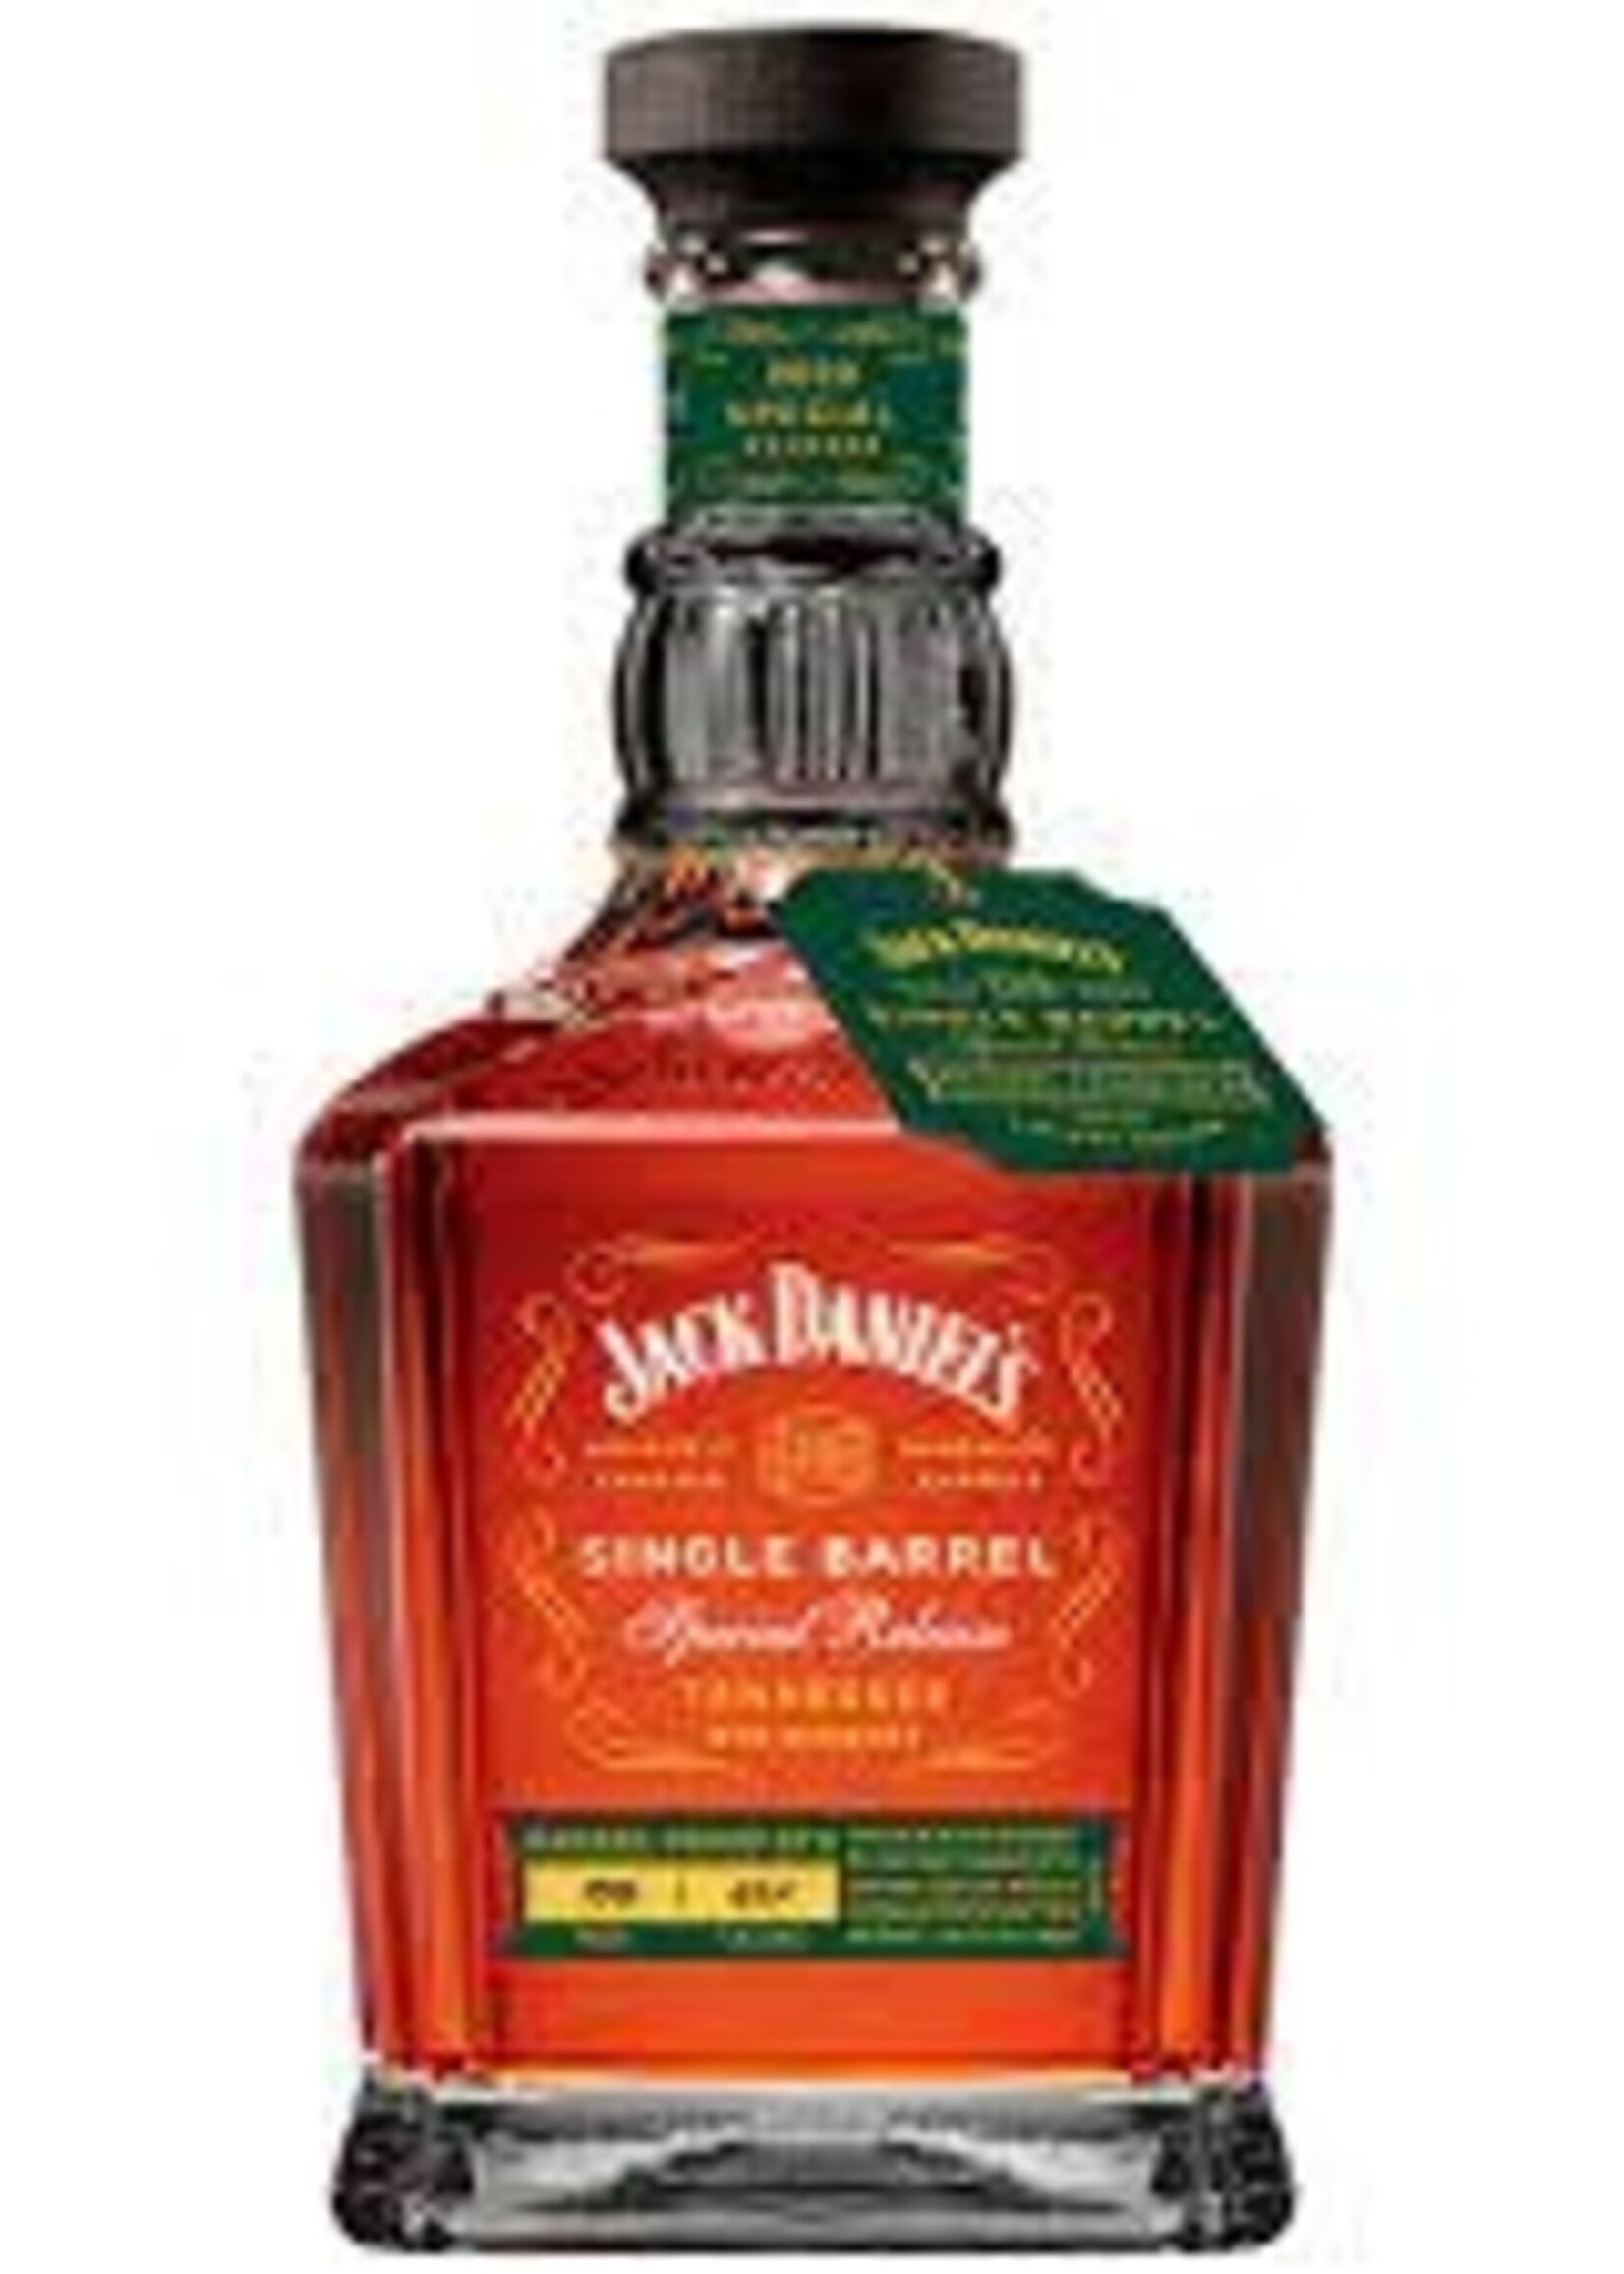 Jack Daniel's Jack Daniel's Single Barrel "Barrel Proof" Rye 750ML